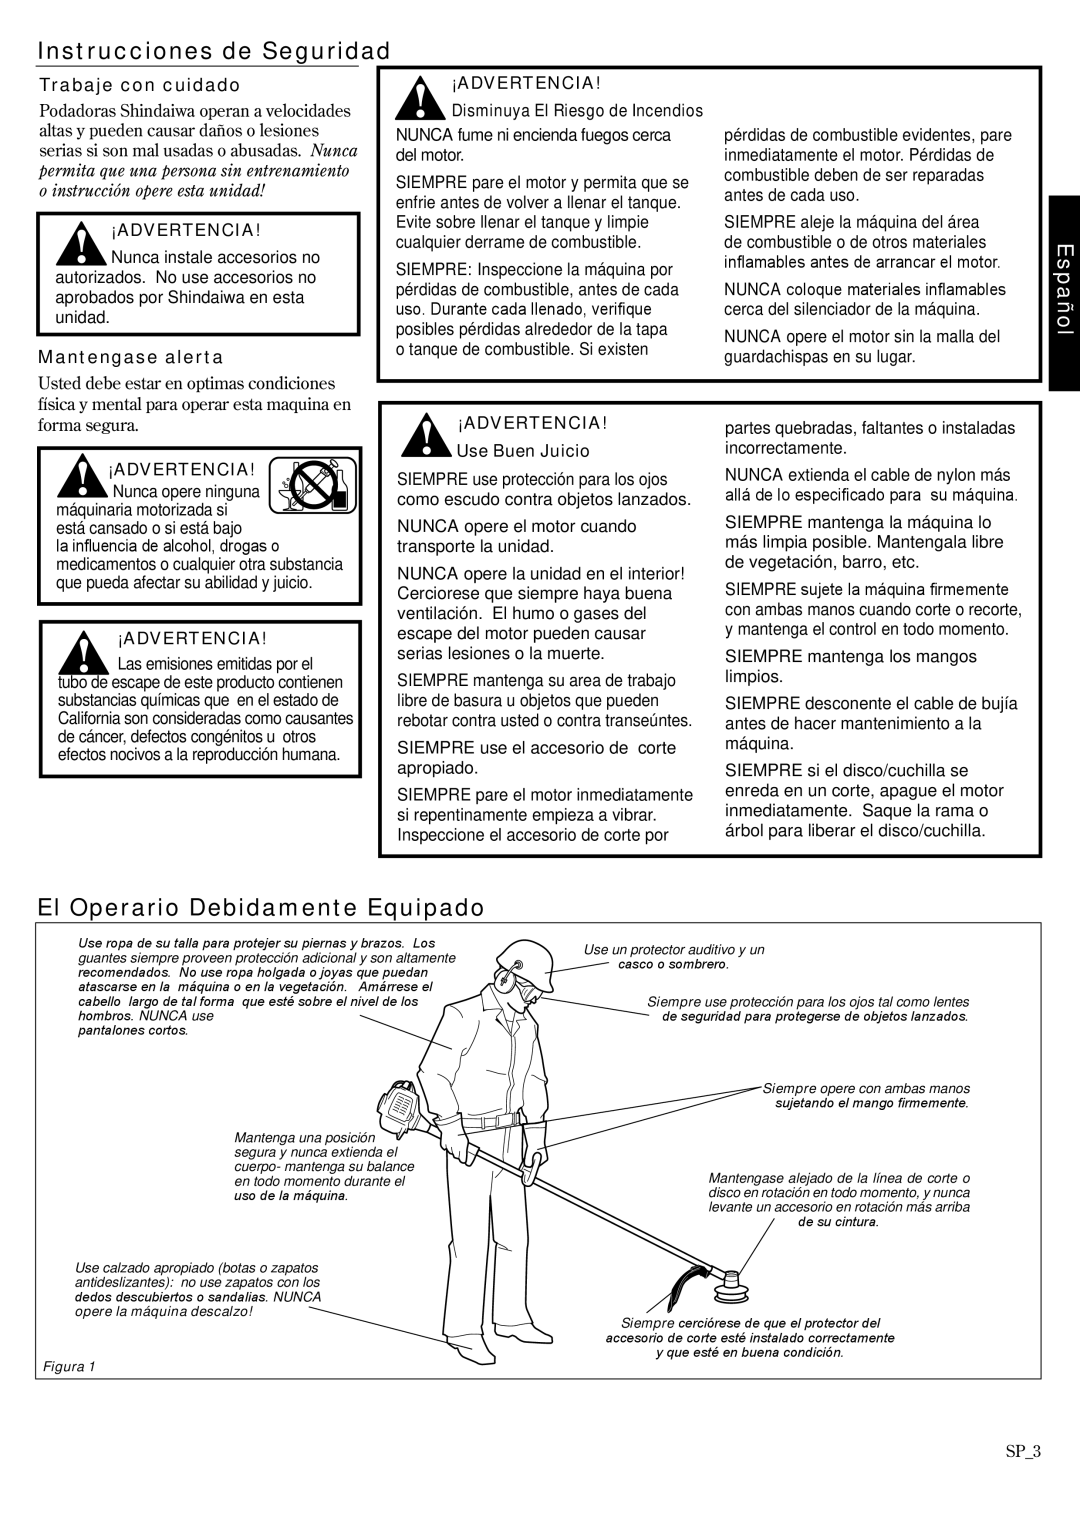 Shindaiwa T222 Instrucciones de Seguridad, El Operario Debidamente Equipado, Español, Trabaje con cuidado, ¡Advertencia 